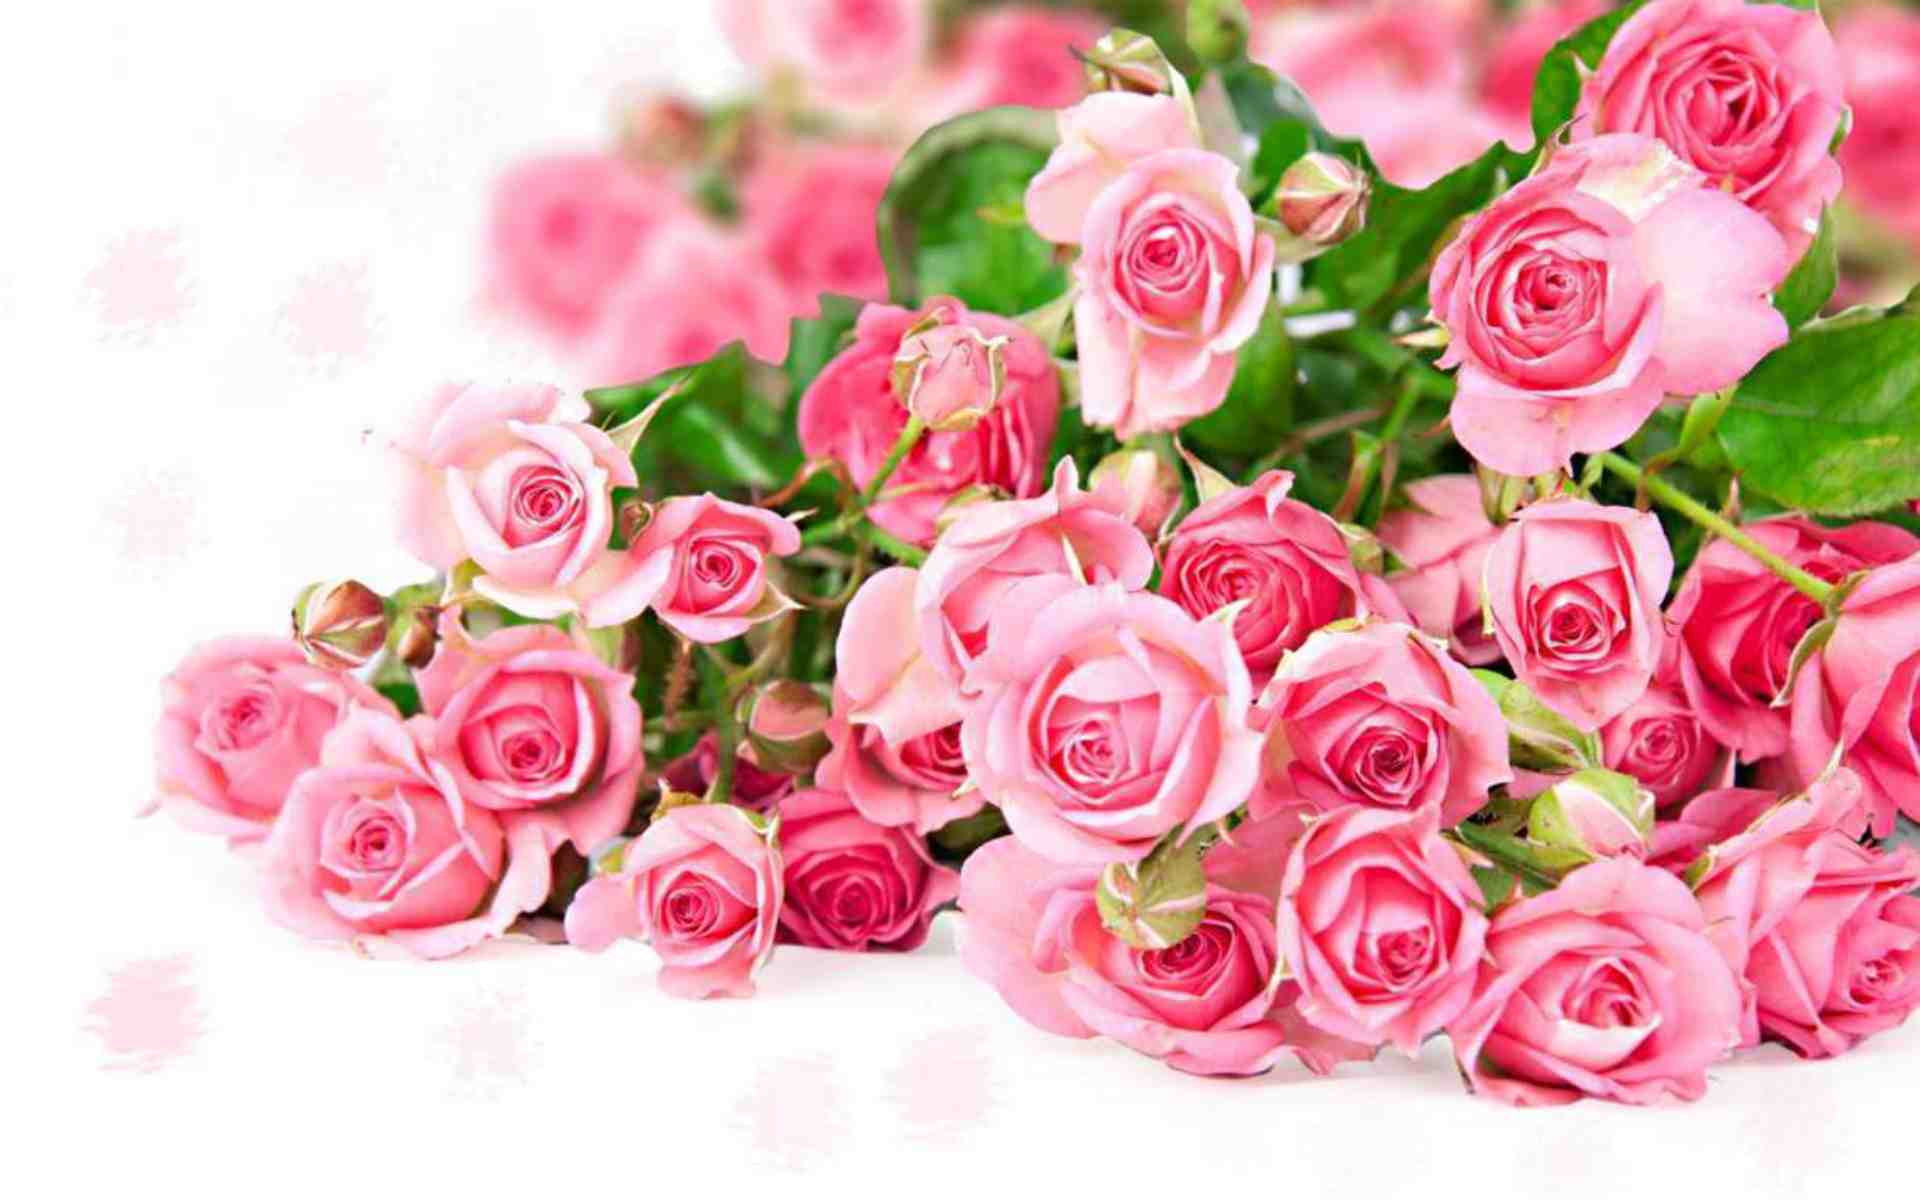 Rose flower wallpaper